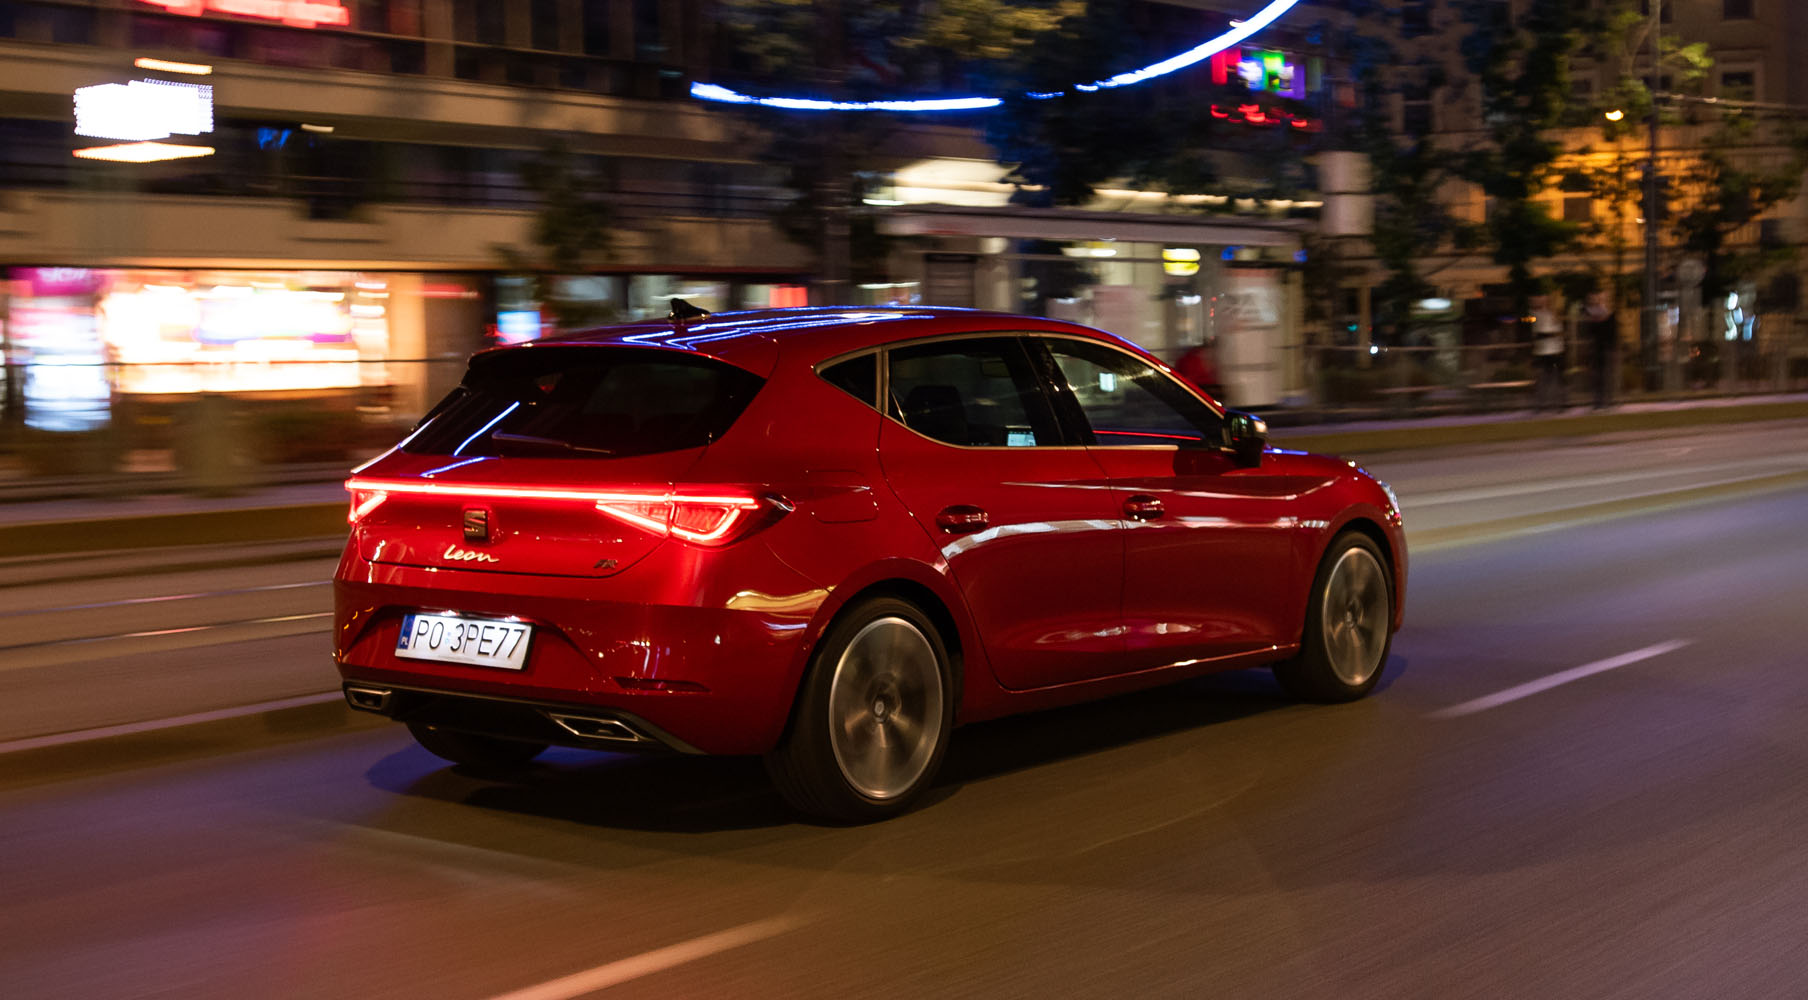 Seat Leon w kolorze Desire Red  przejeżdżający przez nocne miasto z zapalonymi tylnymi światłami LED.